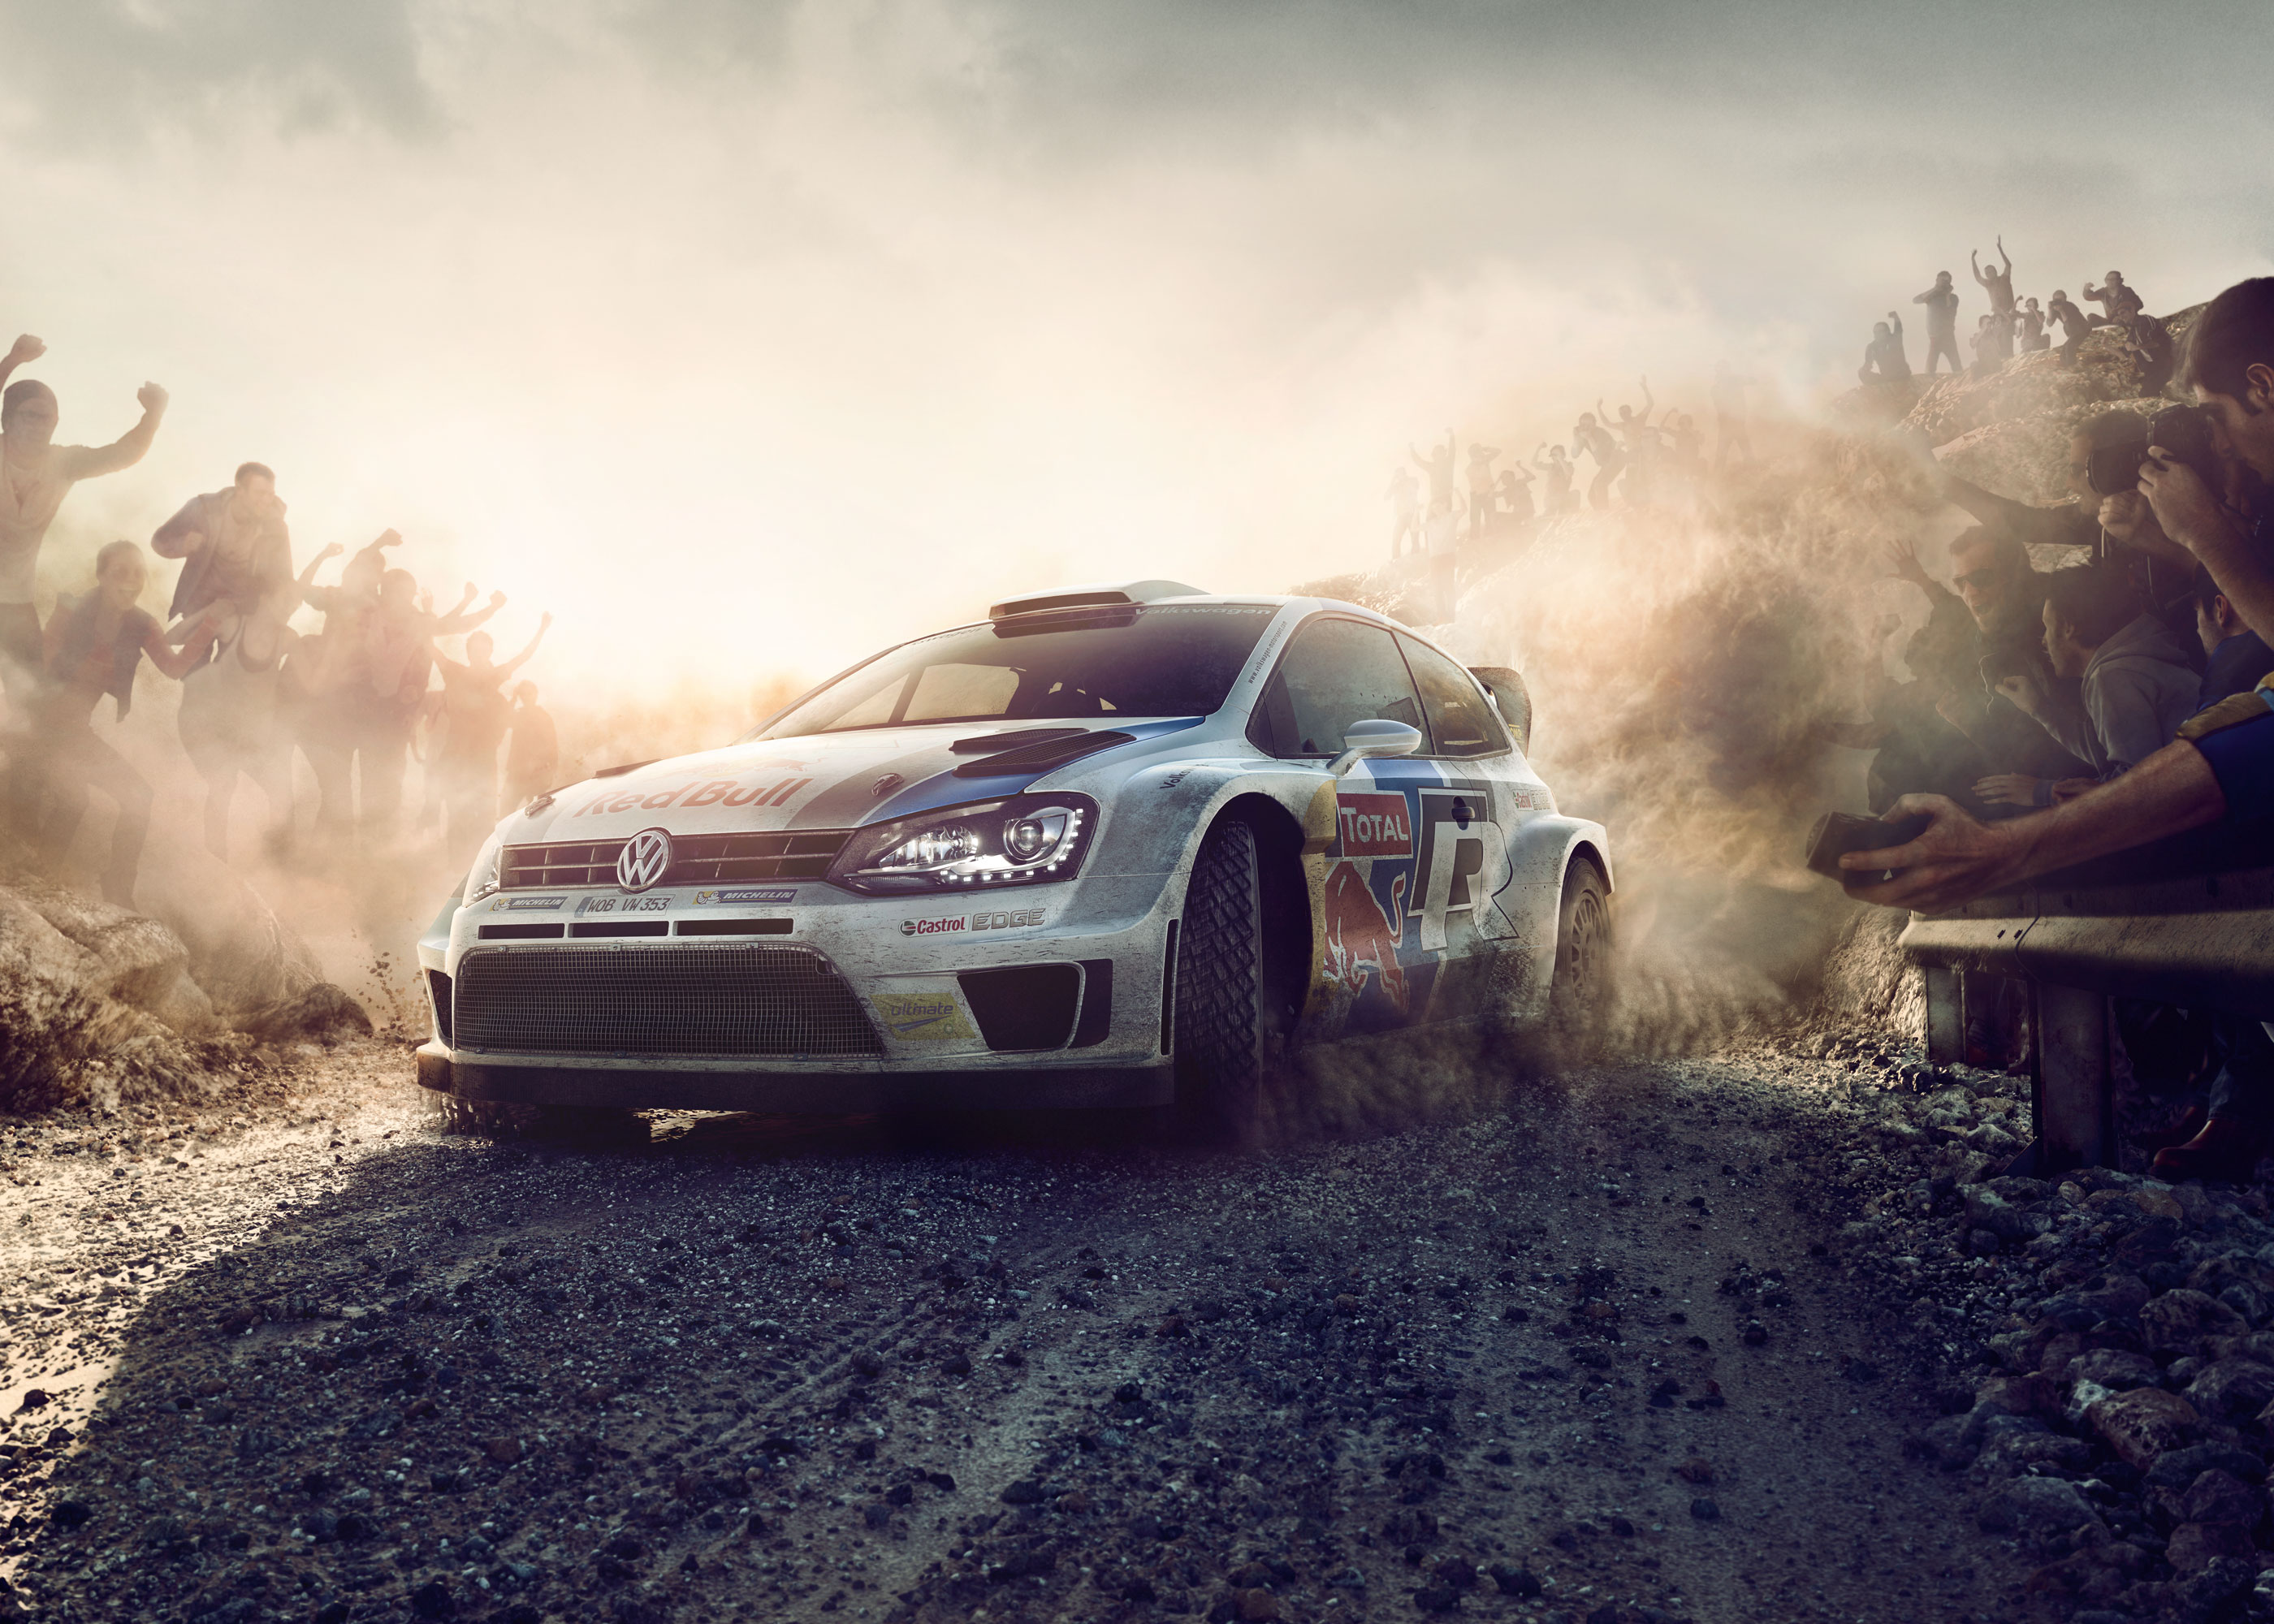 Olaf Hauschulz, Volkswagen WRC, Polo, dust, Full CGI